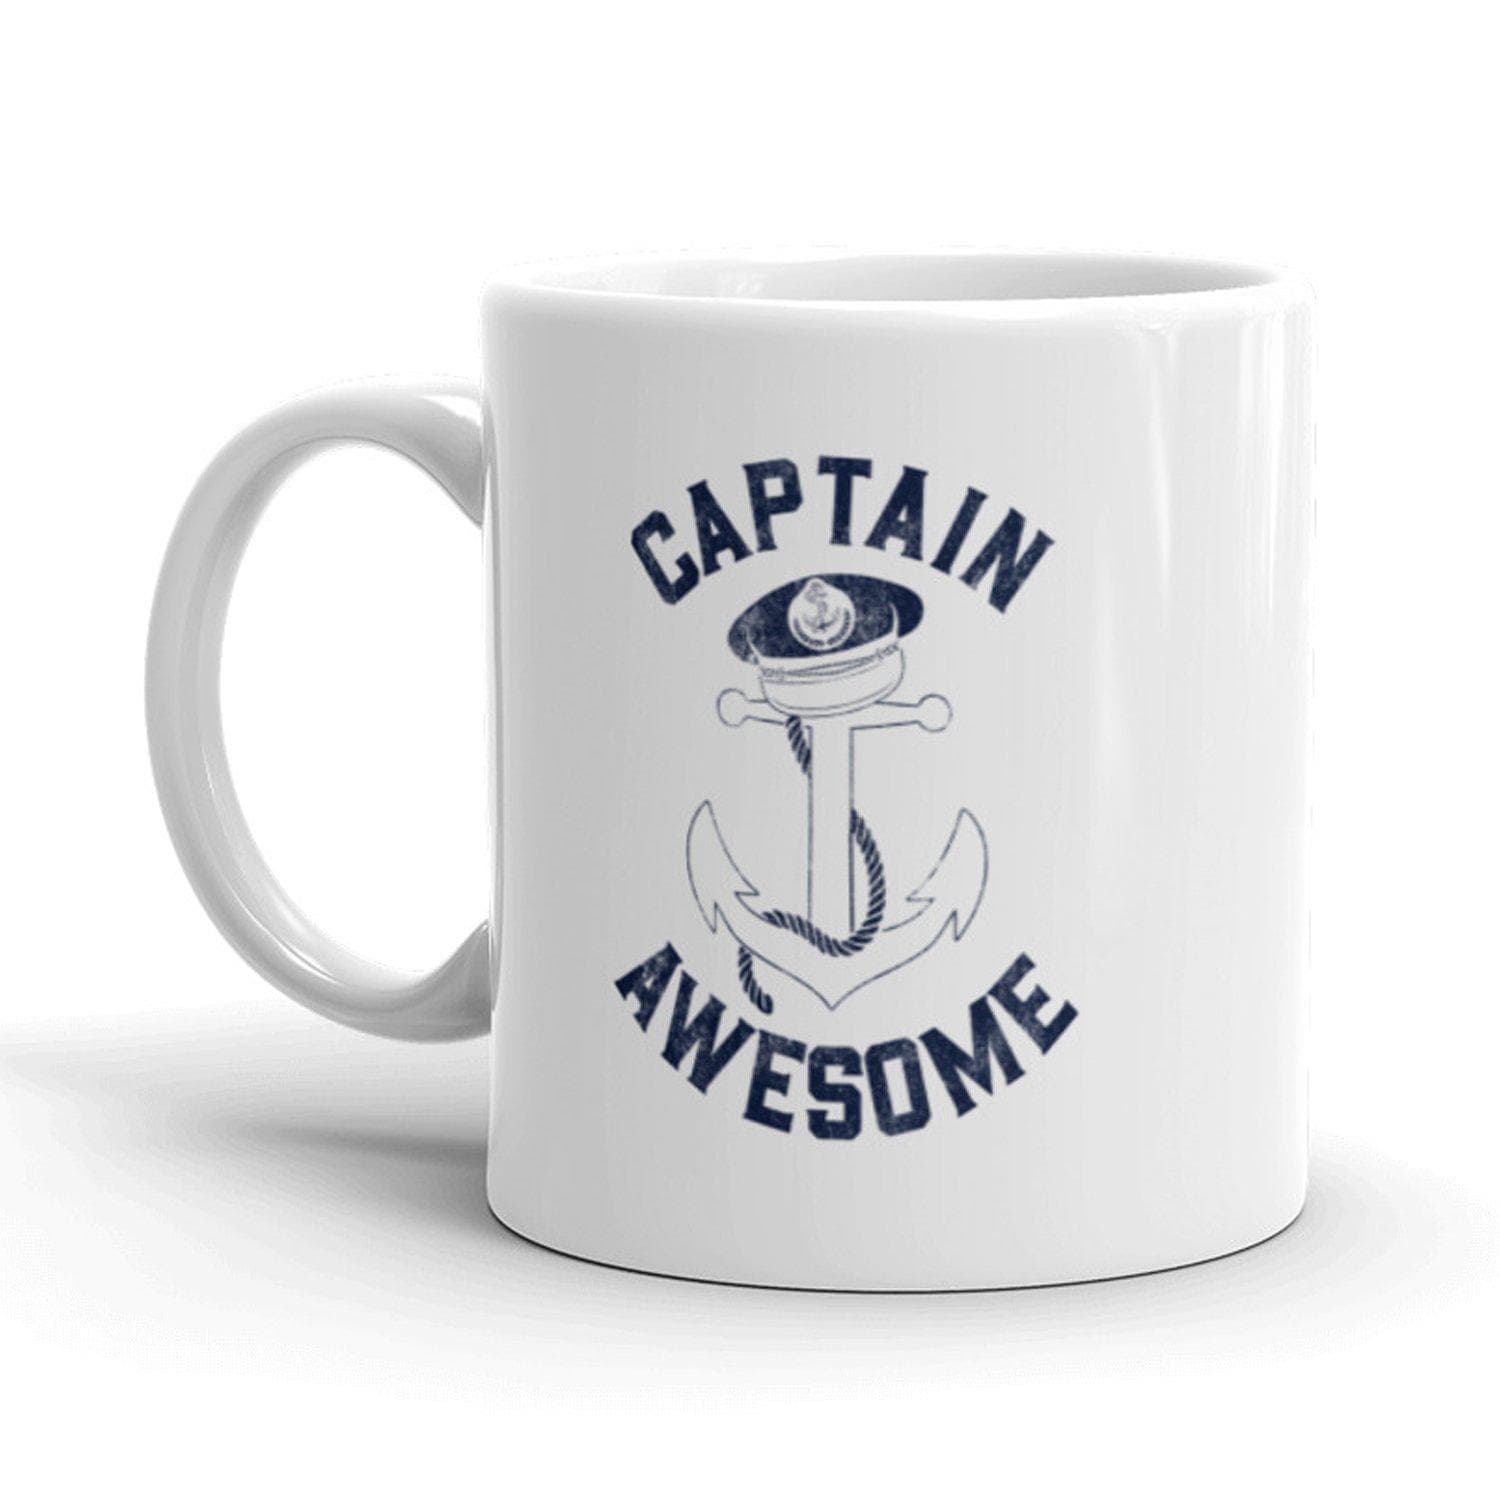 Captain Awesome Mug - Crazy Dog T-Shirts